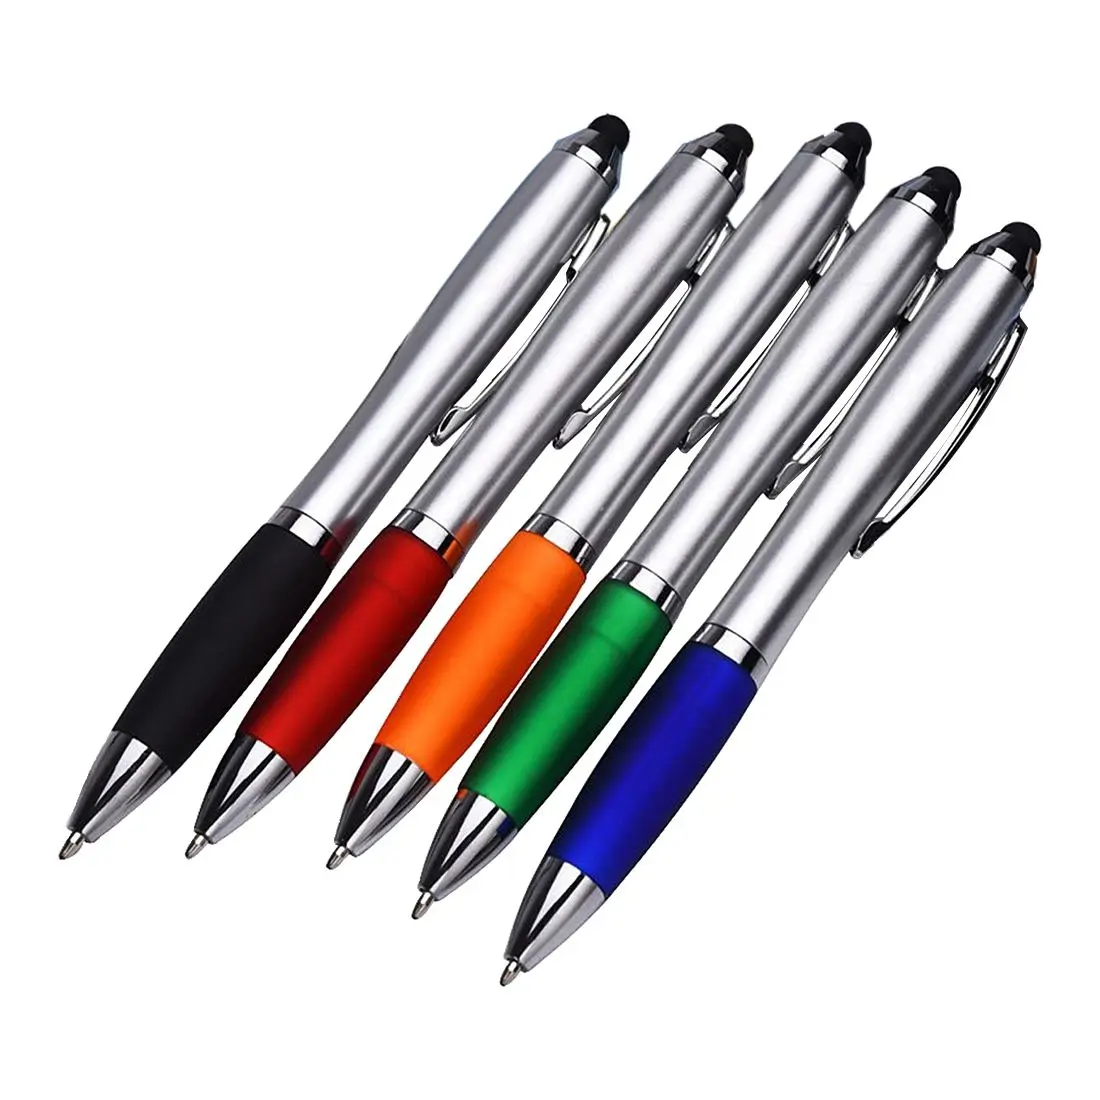 5 упак. 2 в 1 клик стилус и шариковая ручка для планшета iPhone iPad Galaxy и всех емкостных устройств с сенсорным экраном